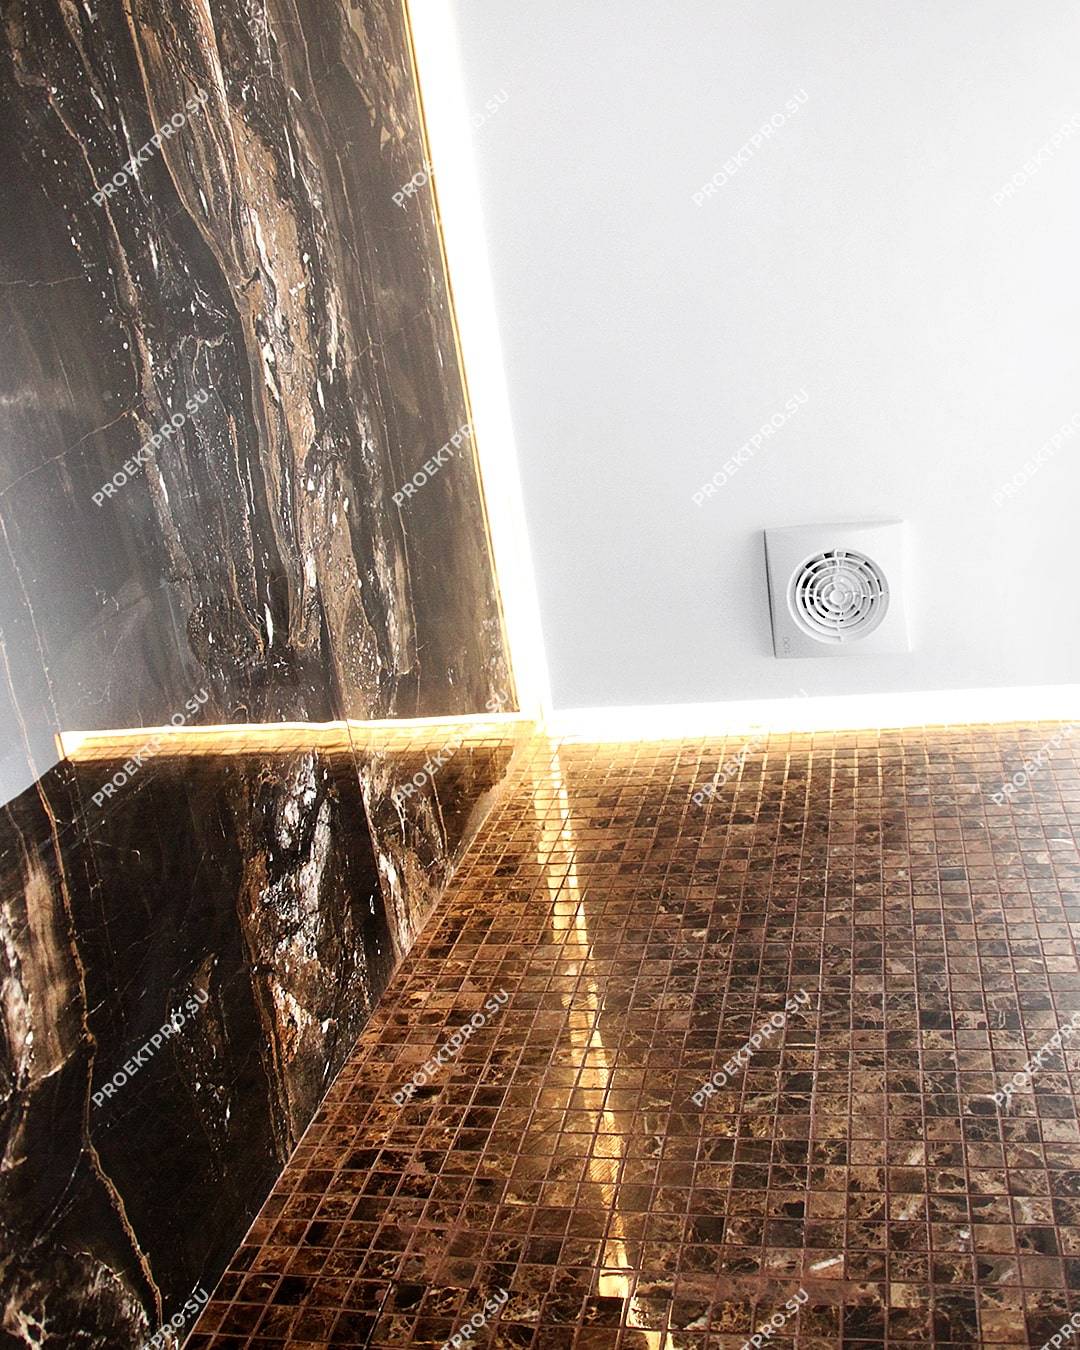 Натяжной потолок в ванной комнате - фото, советы, дизайн